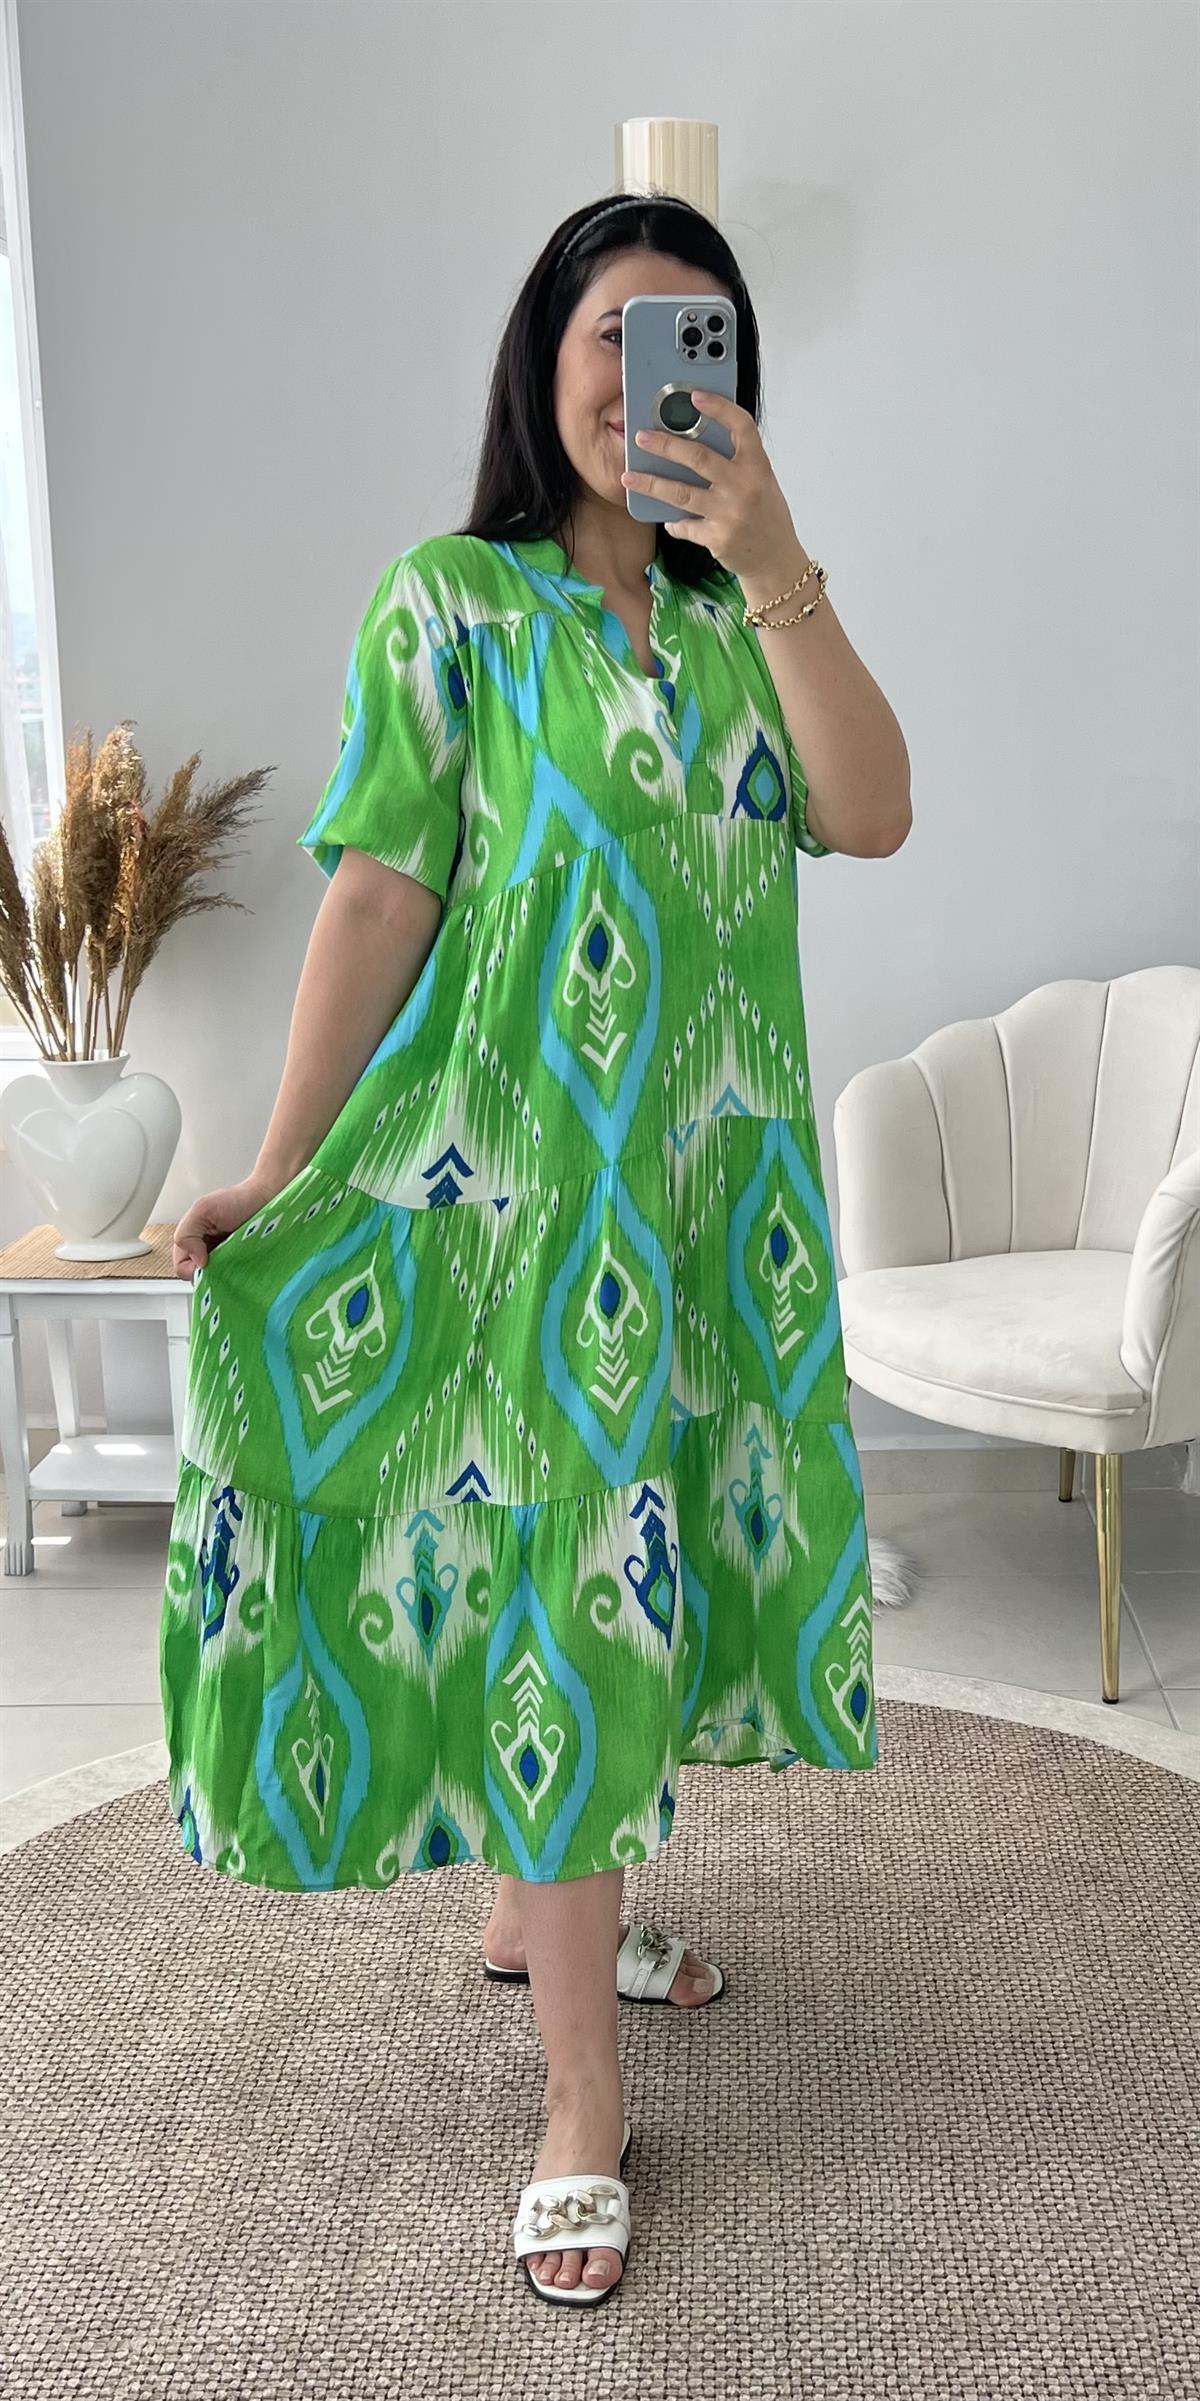 Enter Yeşil Desenli Salaş Kesim Yazlık Elbise ELBİSE Ürünü Sadece 349,00